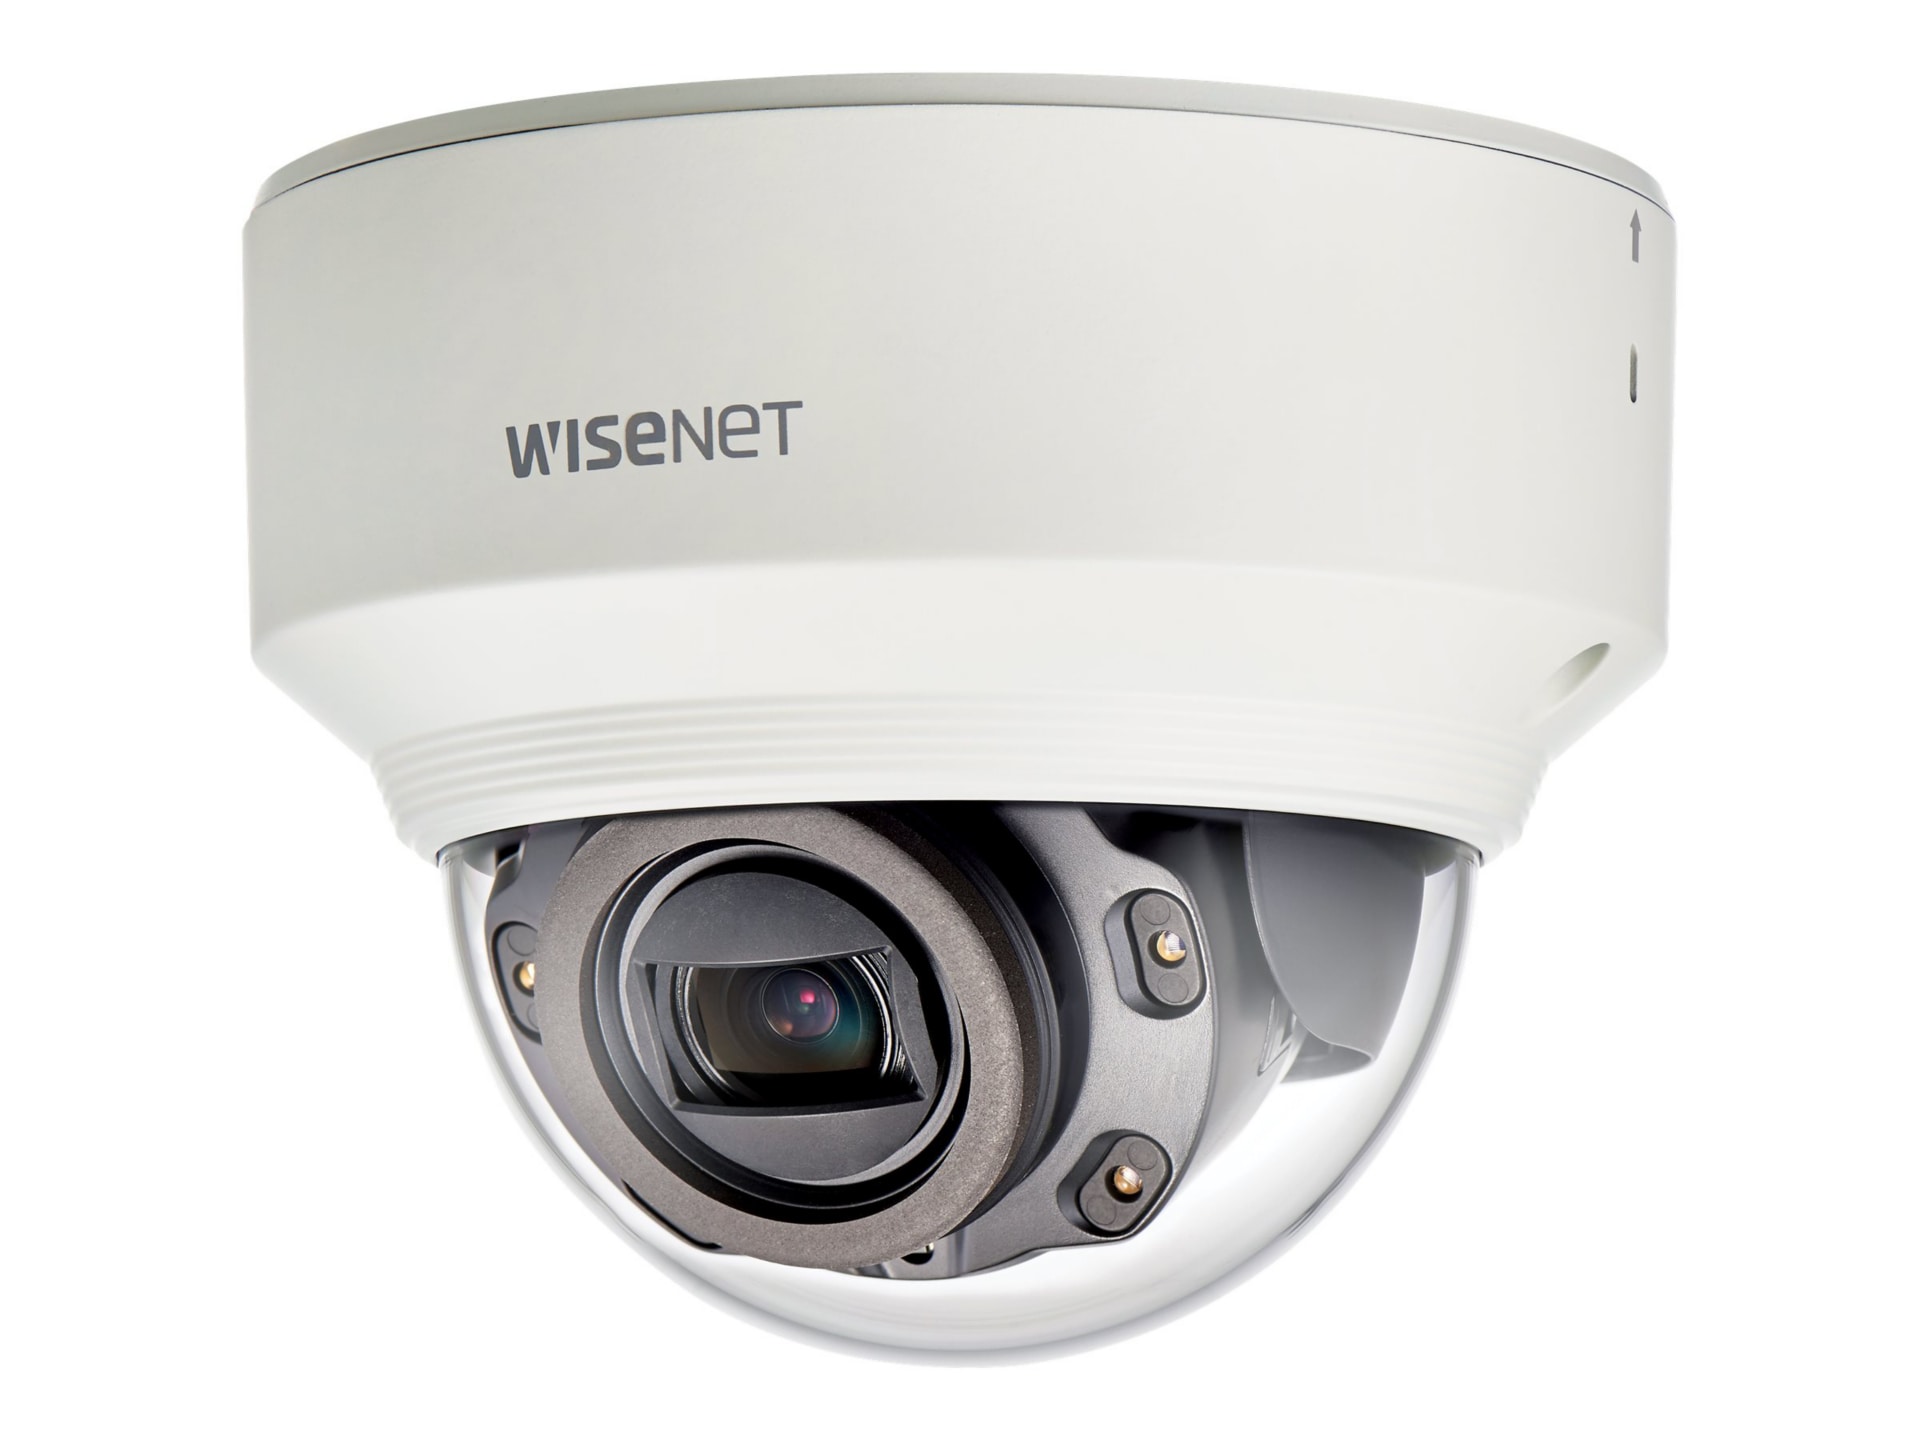 Samsung WiseNet X XND-6080RV - network surveillance camera